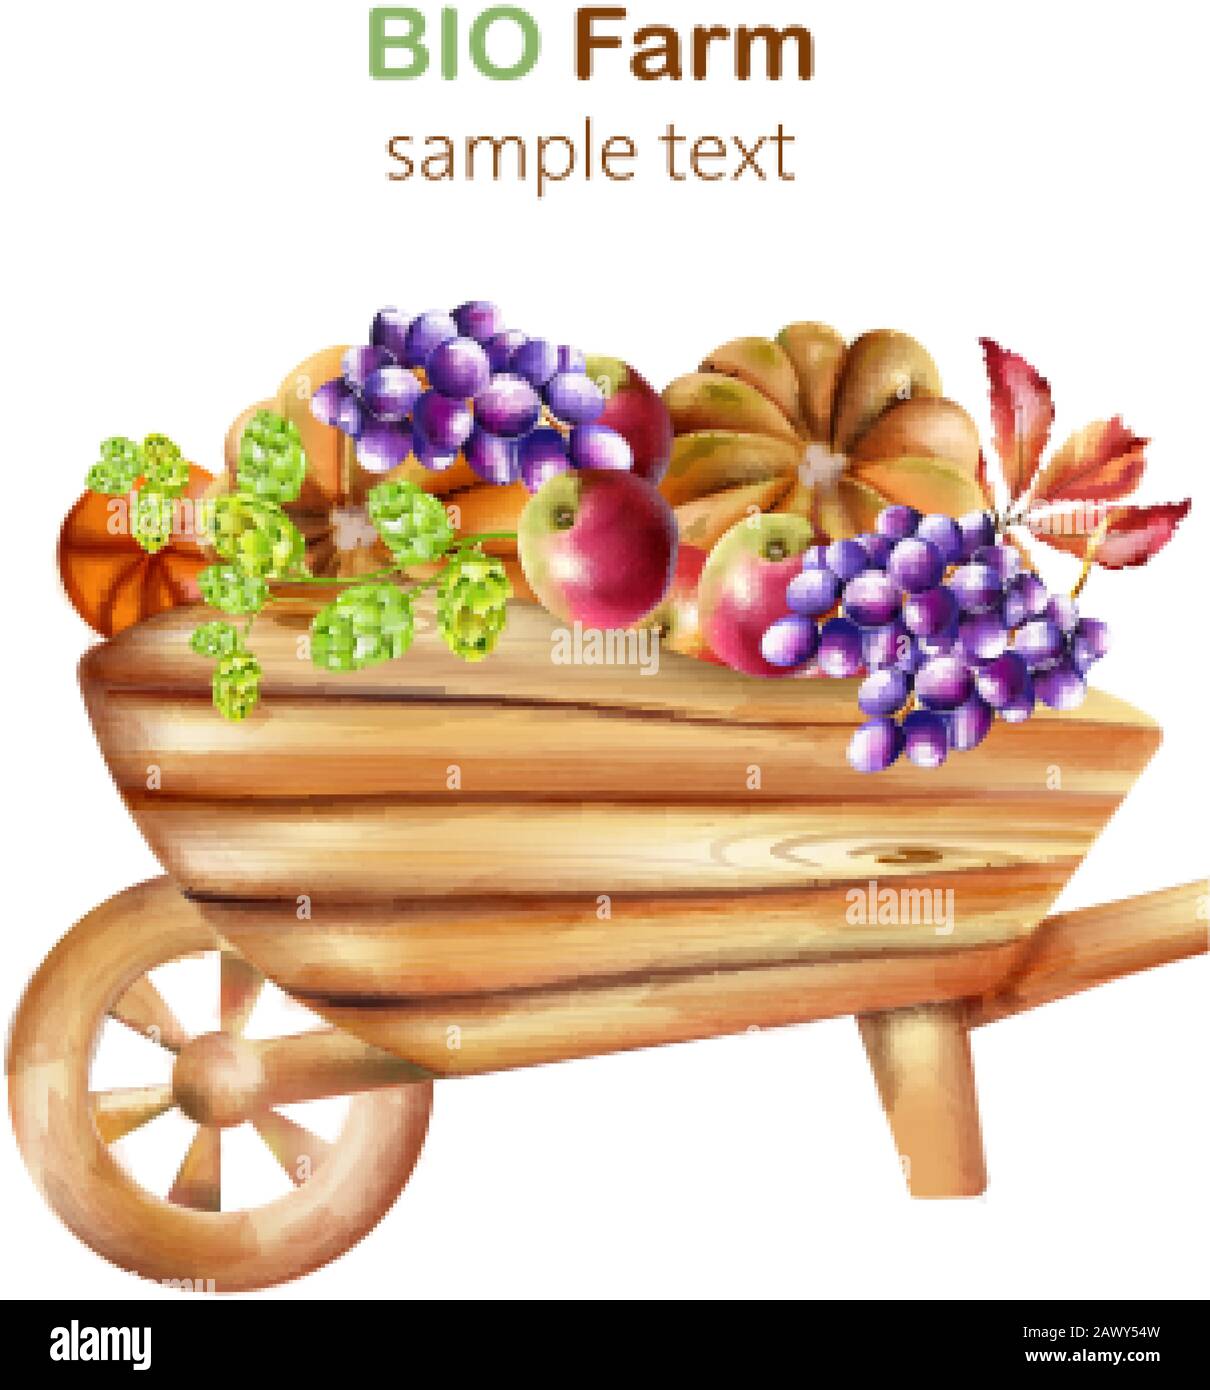 Composition bio de la ferme avec brouette en bois remplie d'artichaut, citrouilles, pommes, raisins et feuilles. Vecteur De Aquarelle Illustration de Vecteur